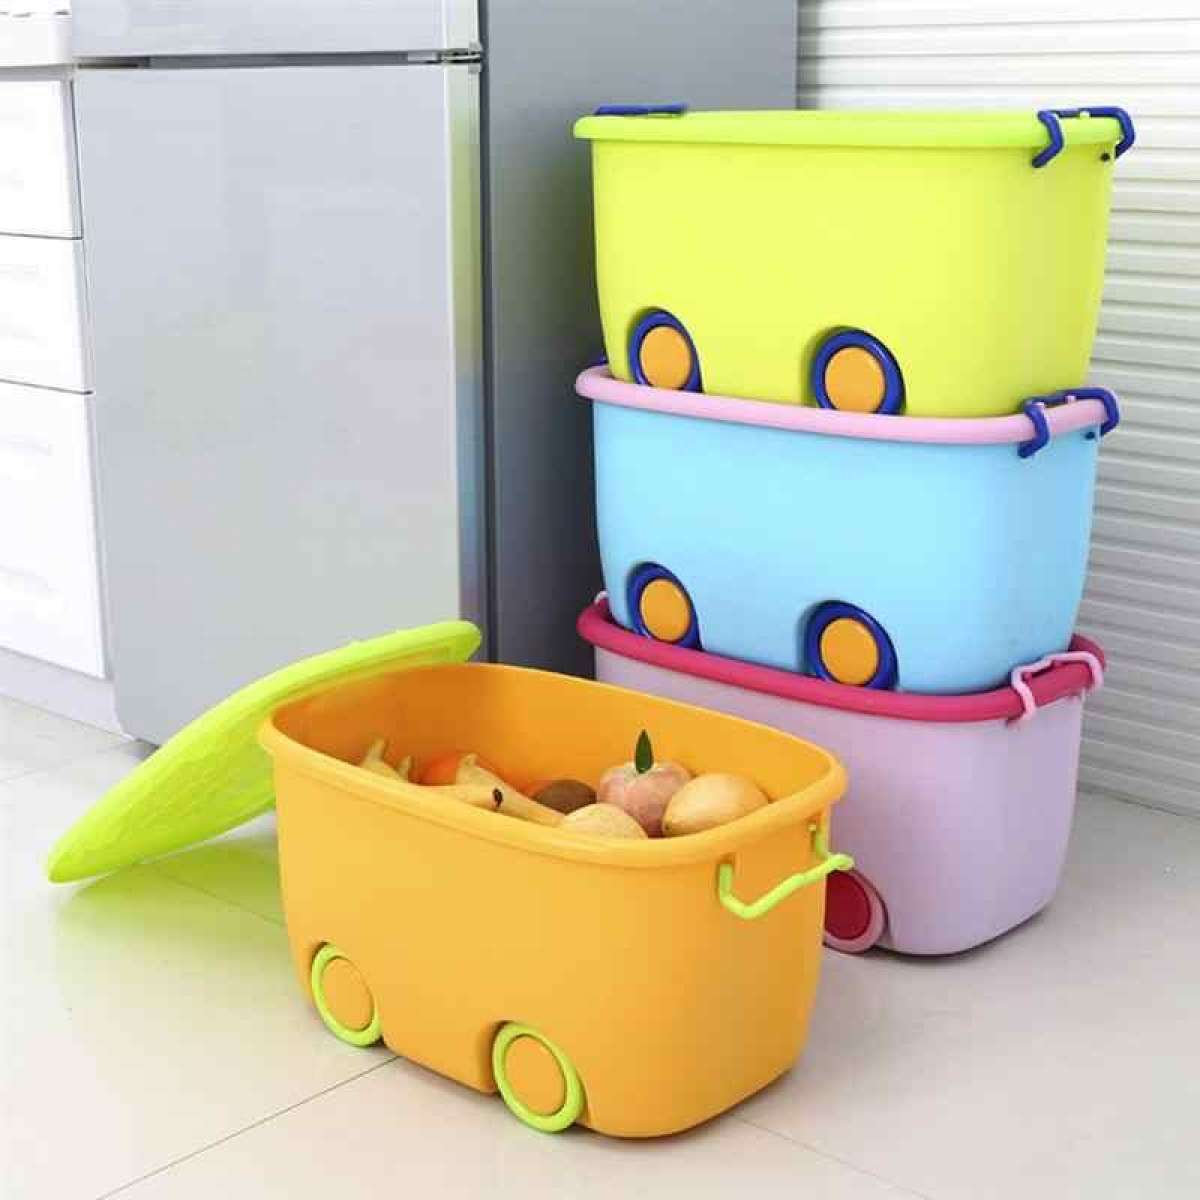 Children kids toy storage box wheeled plastic storage organizer